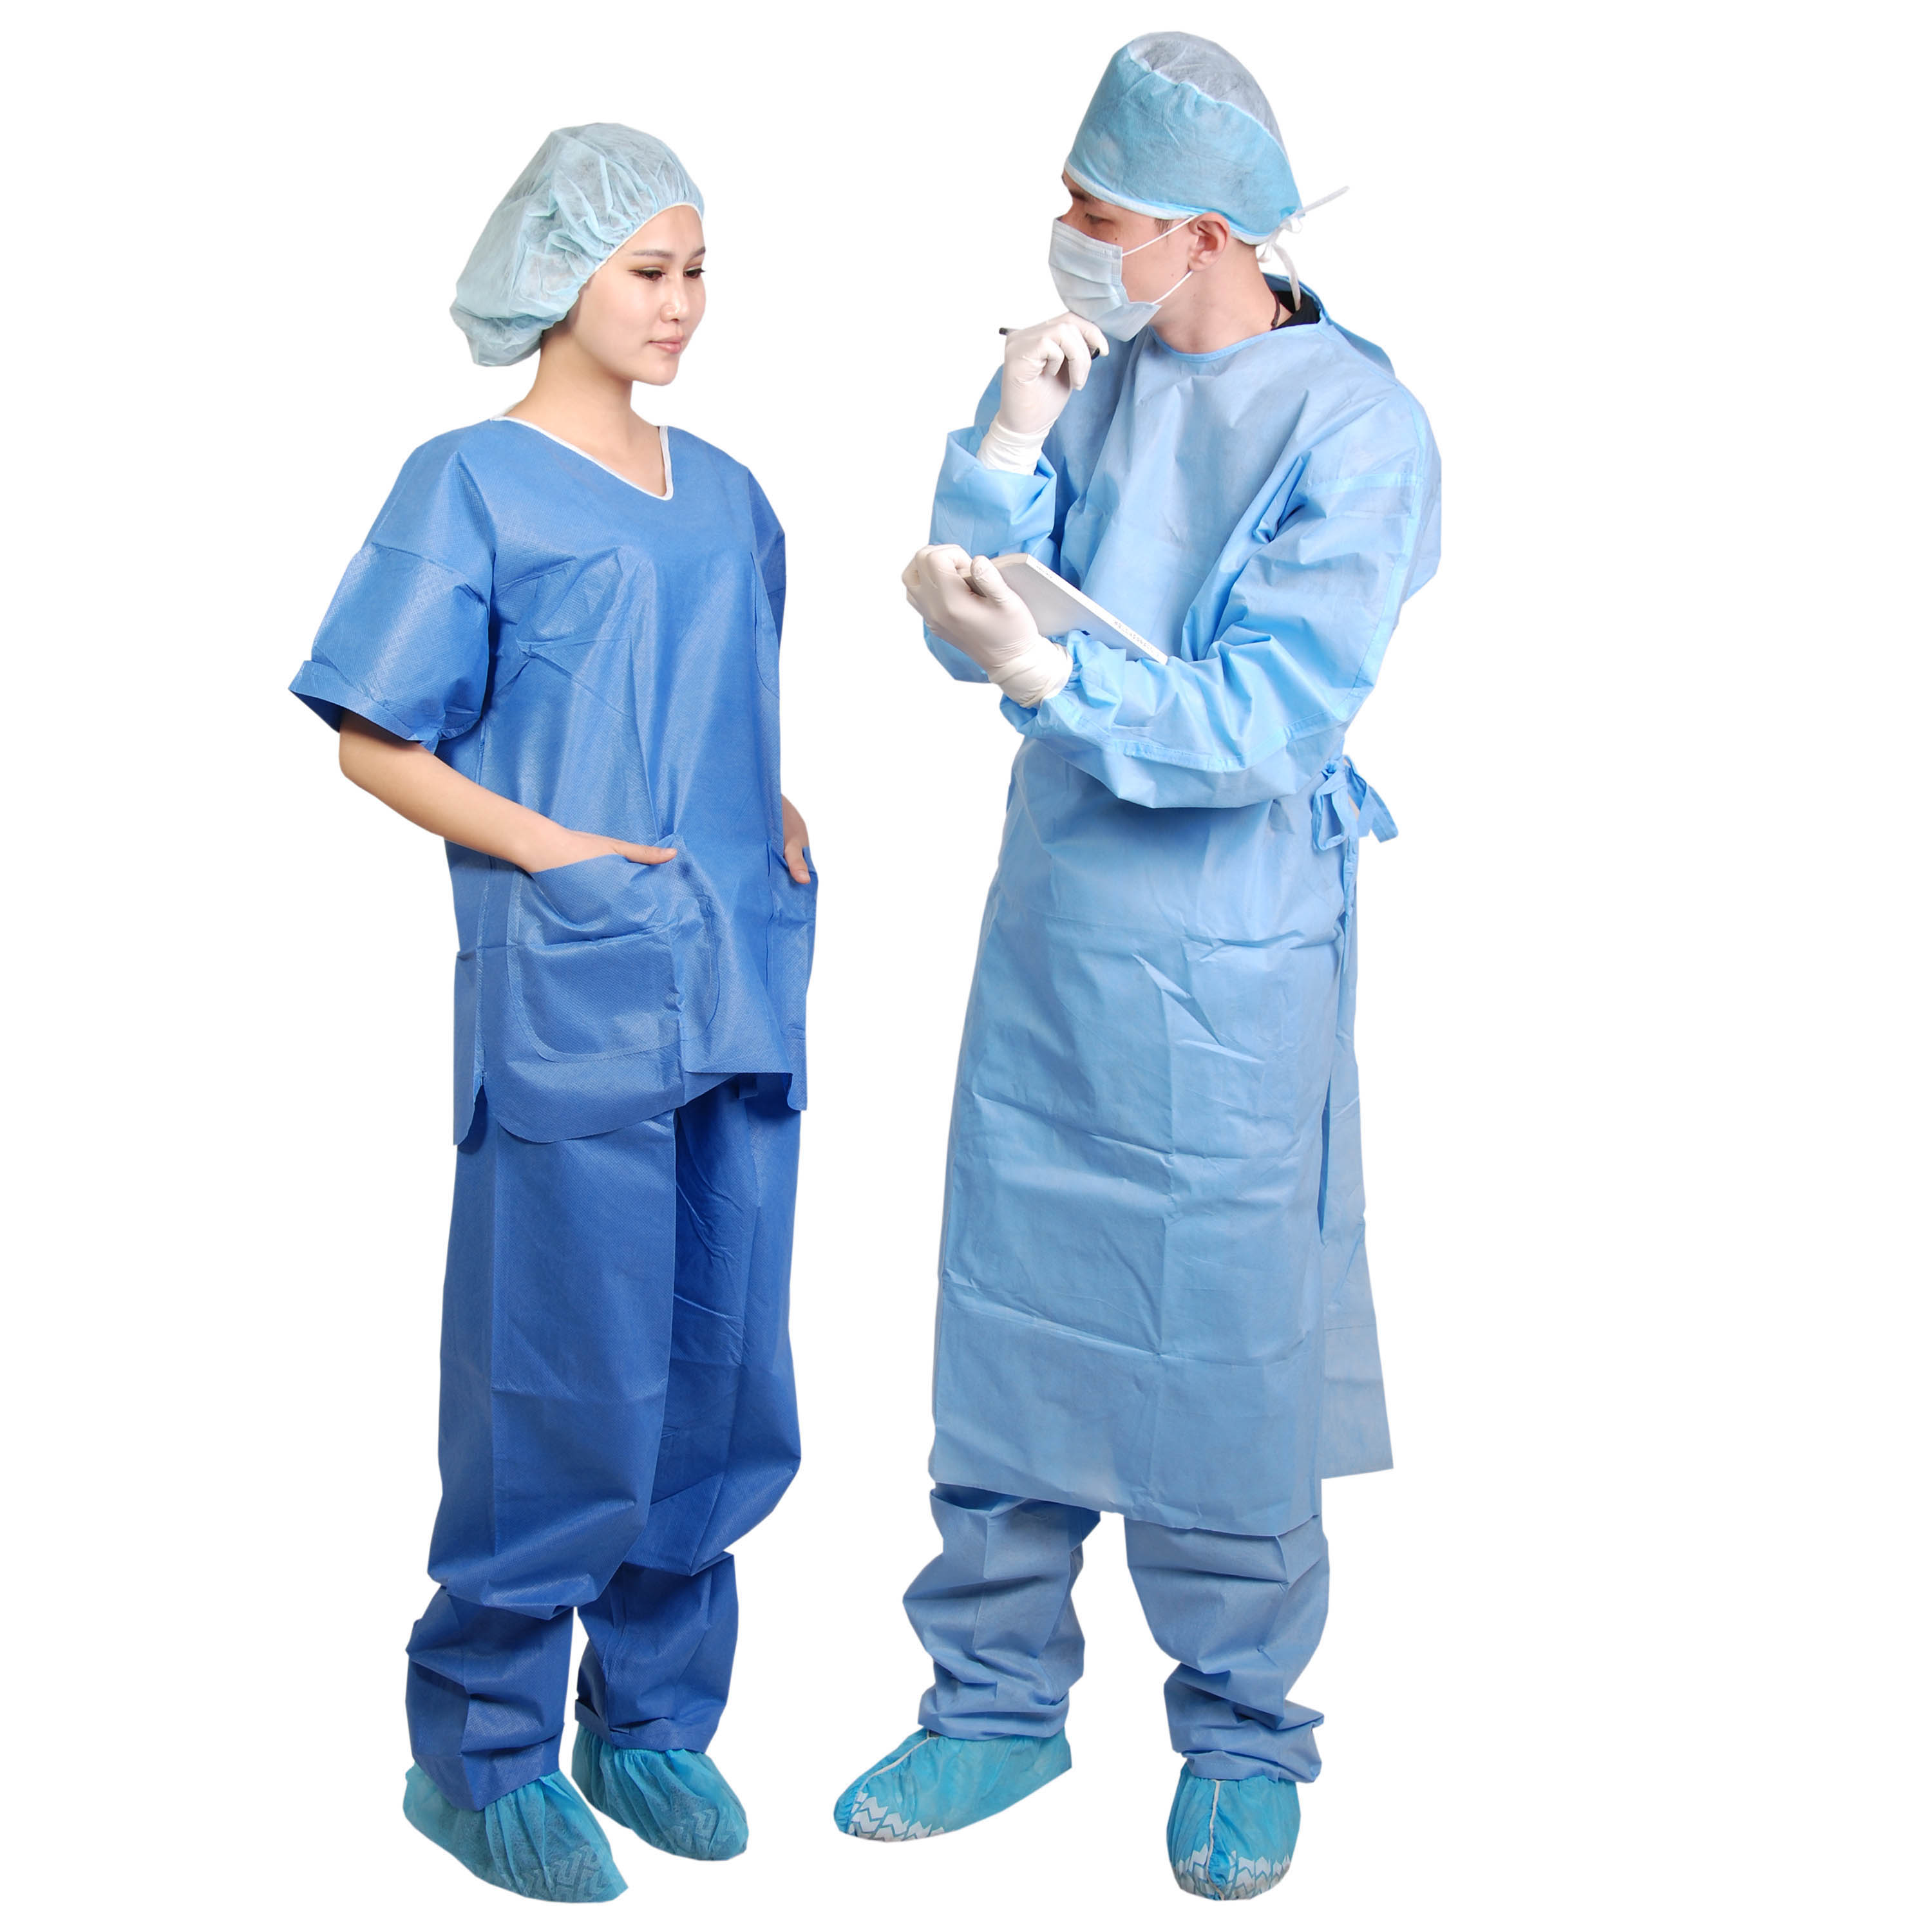 Fato de esfoliação descartável Fato de esfoliação reutilizável Médico enfermeira Fato de esfoliação uniforme hospitalar